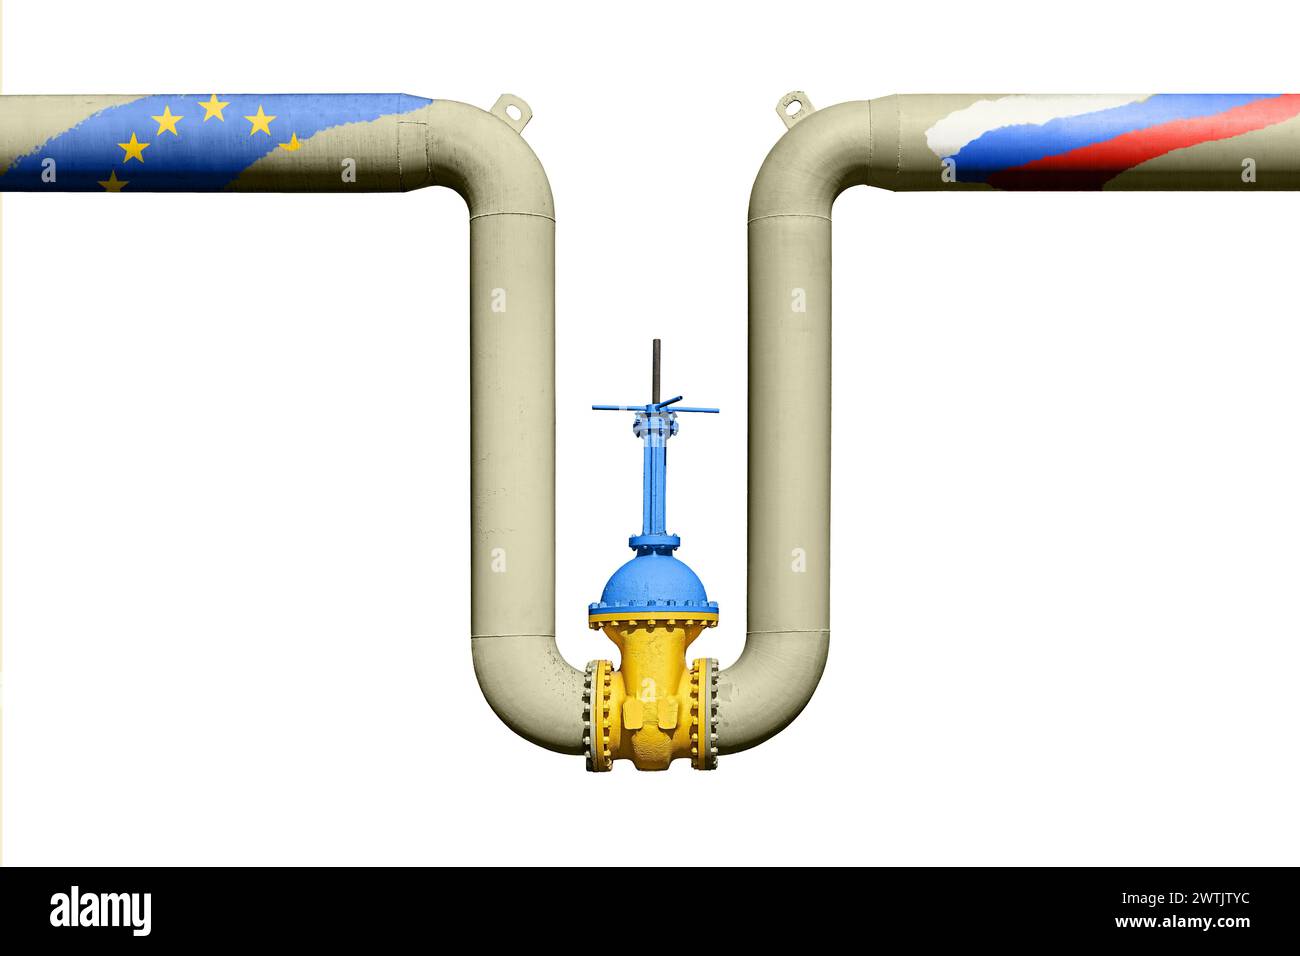 Vanne d'arrêt ukrainienne sur le gazoduc entre la Russie et l'Union européenne. Tensions géopolitiques sur les ressources énergétiques Banque D'Images